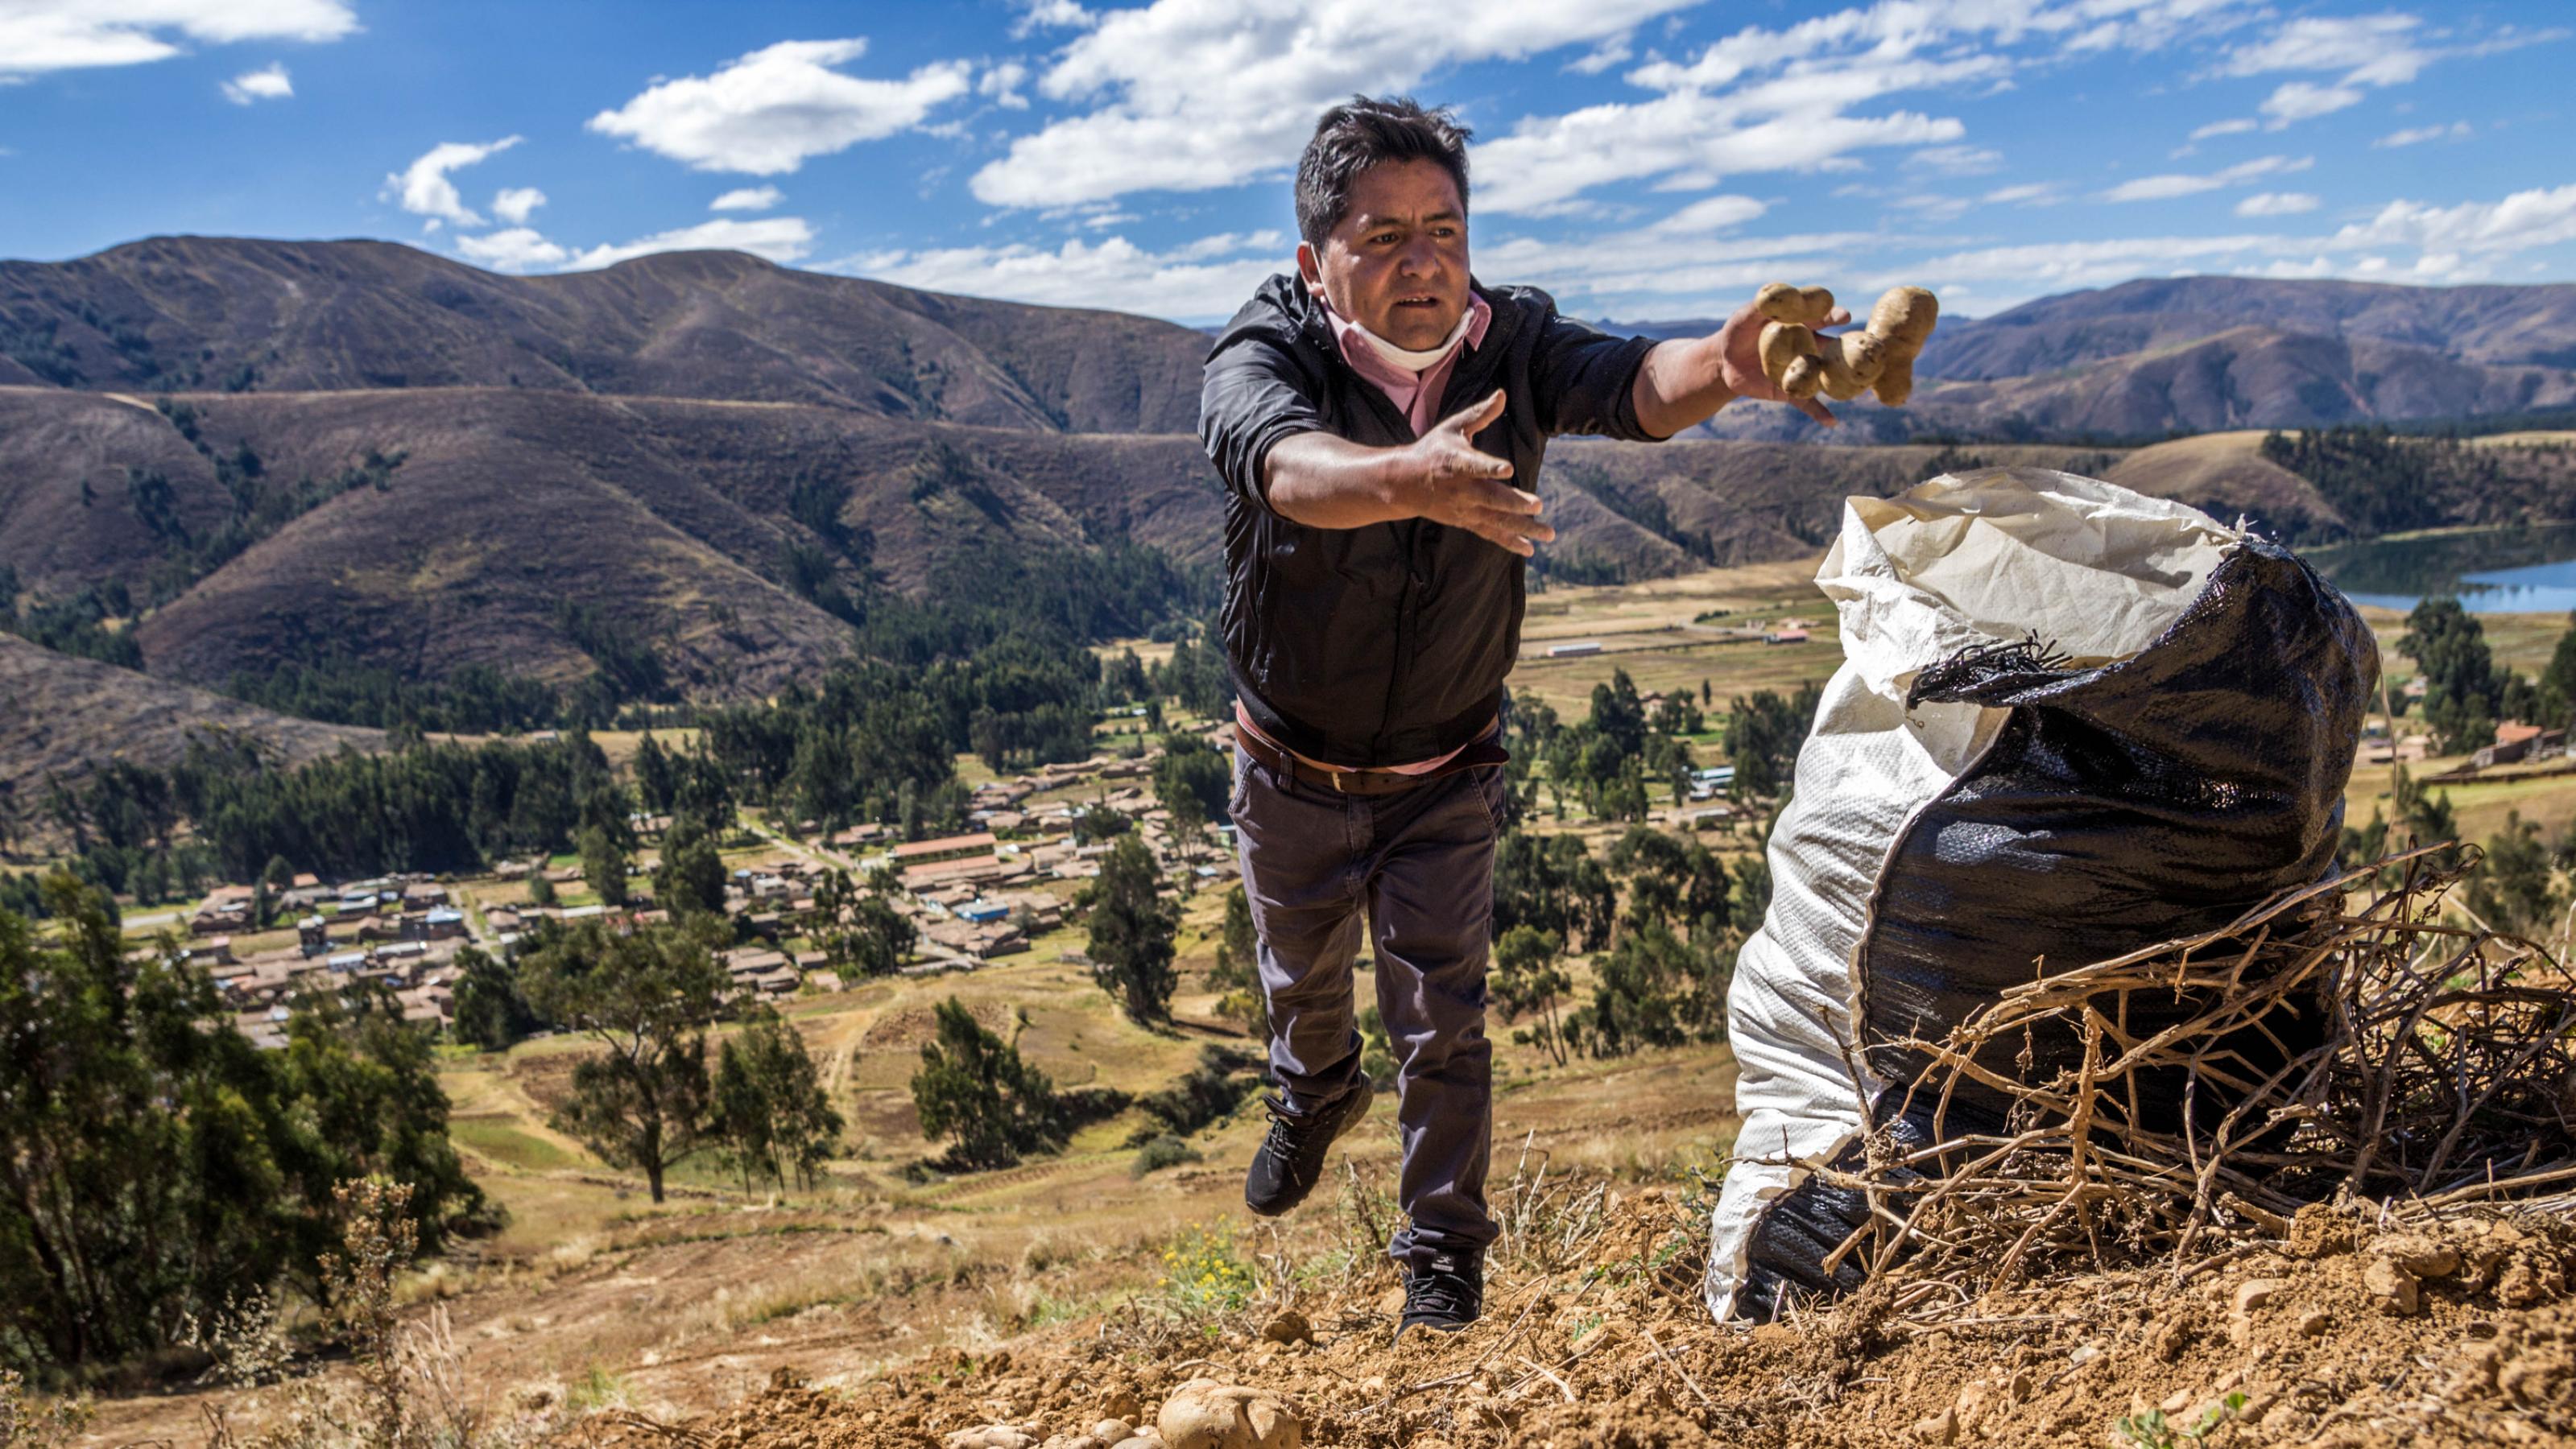 Ein Mann wirft Kartoffeln in einen Sack, der auf seine Feld steht. Im Hintergrund sieht man ein Tal, dahinter ragen Berge auf.